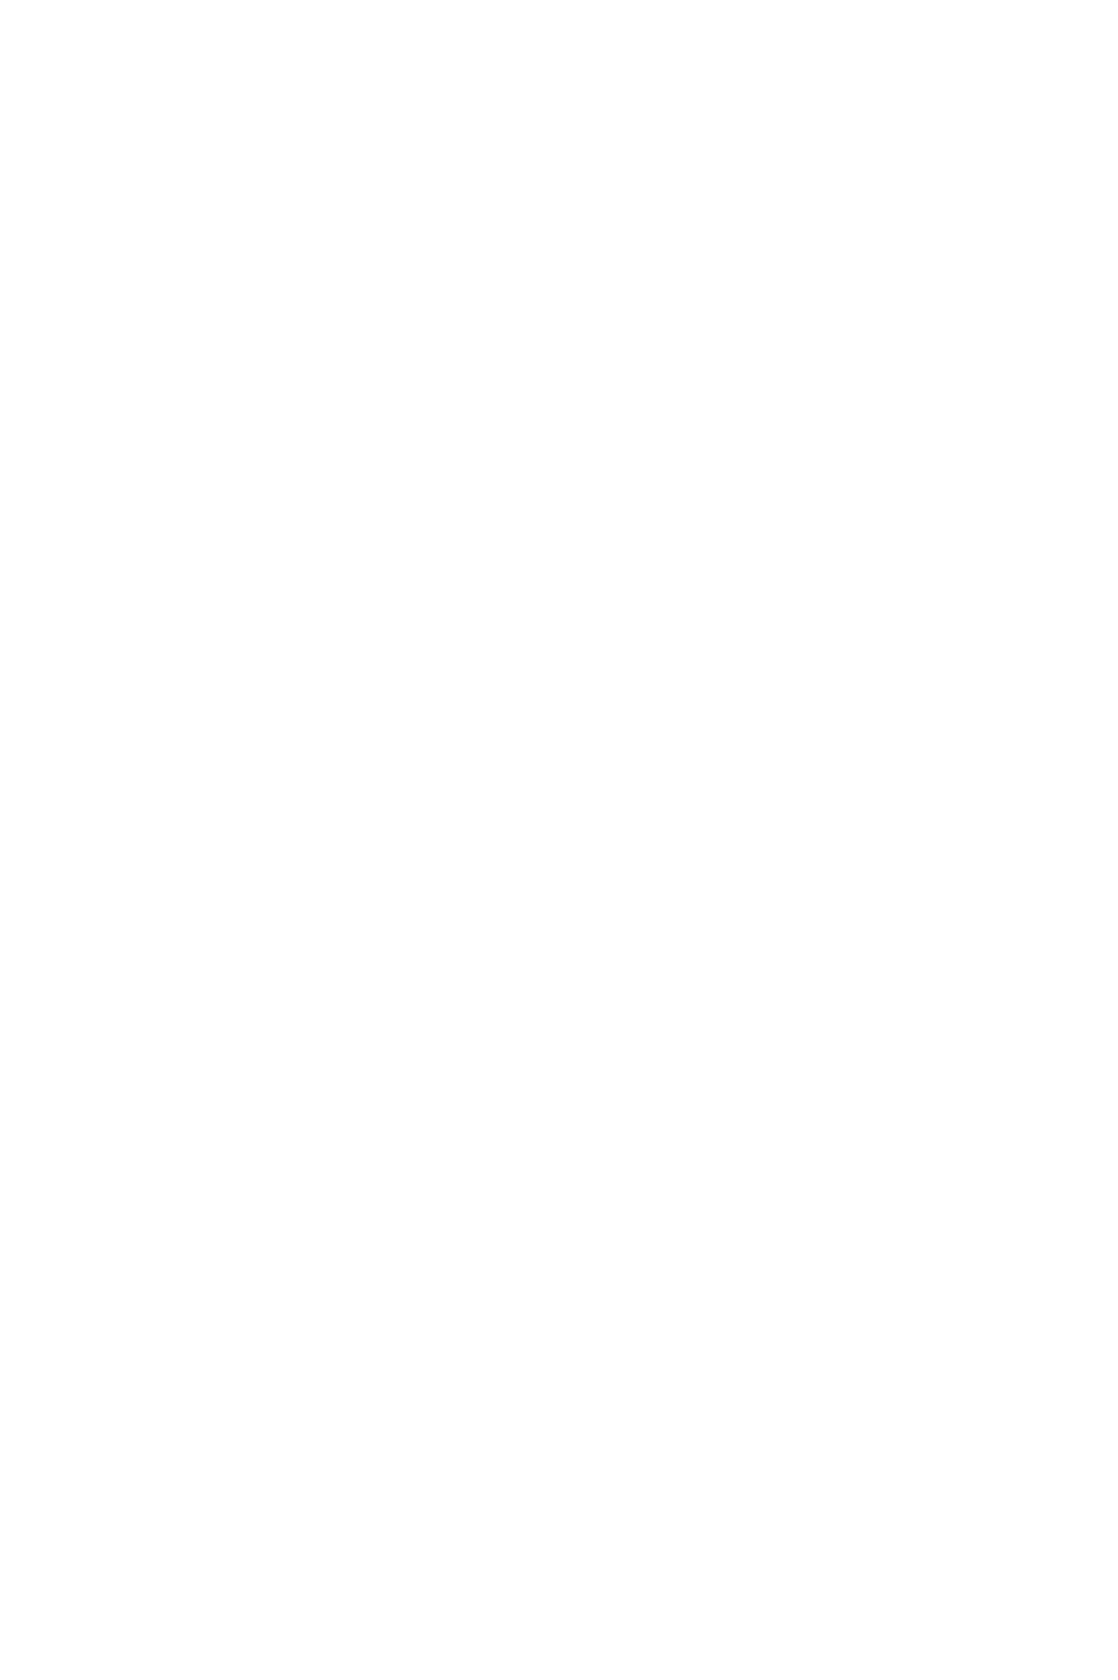 Полушубок с капюшоном из искусственного меха под норку большого размера на заказ в ателье с доставкой по России, в Казахстан и Беларусь